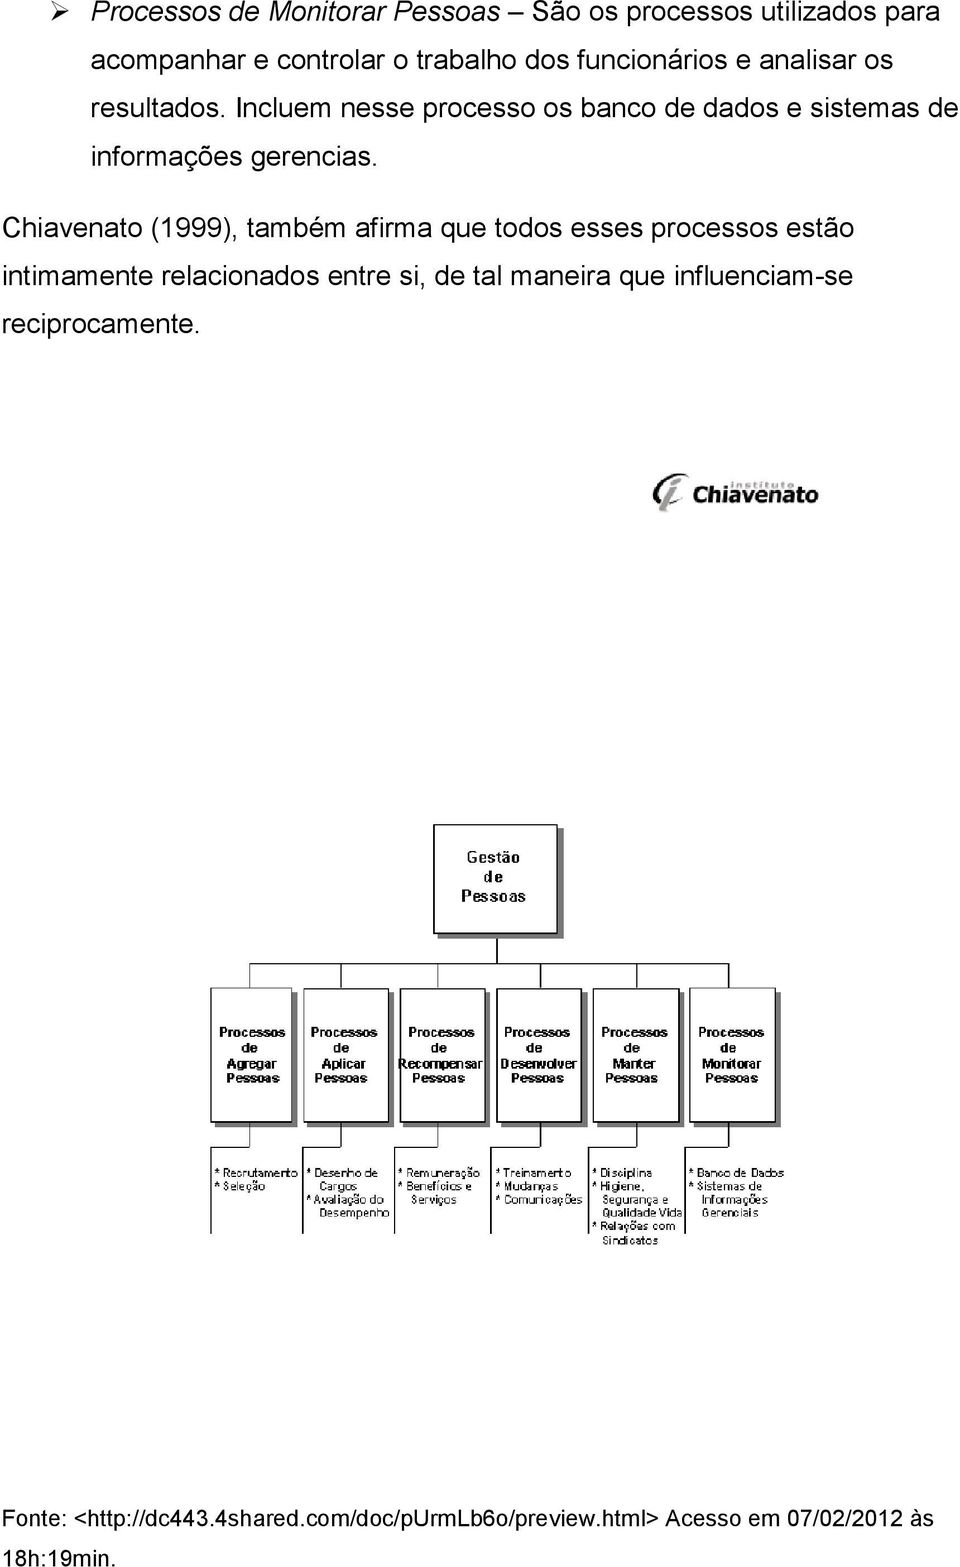 Chiavenato (1999), também afirma que todos esses processos estão intimamente relacionados entre si, de tal maneira